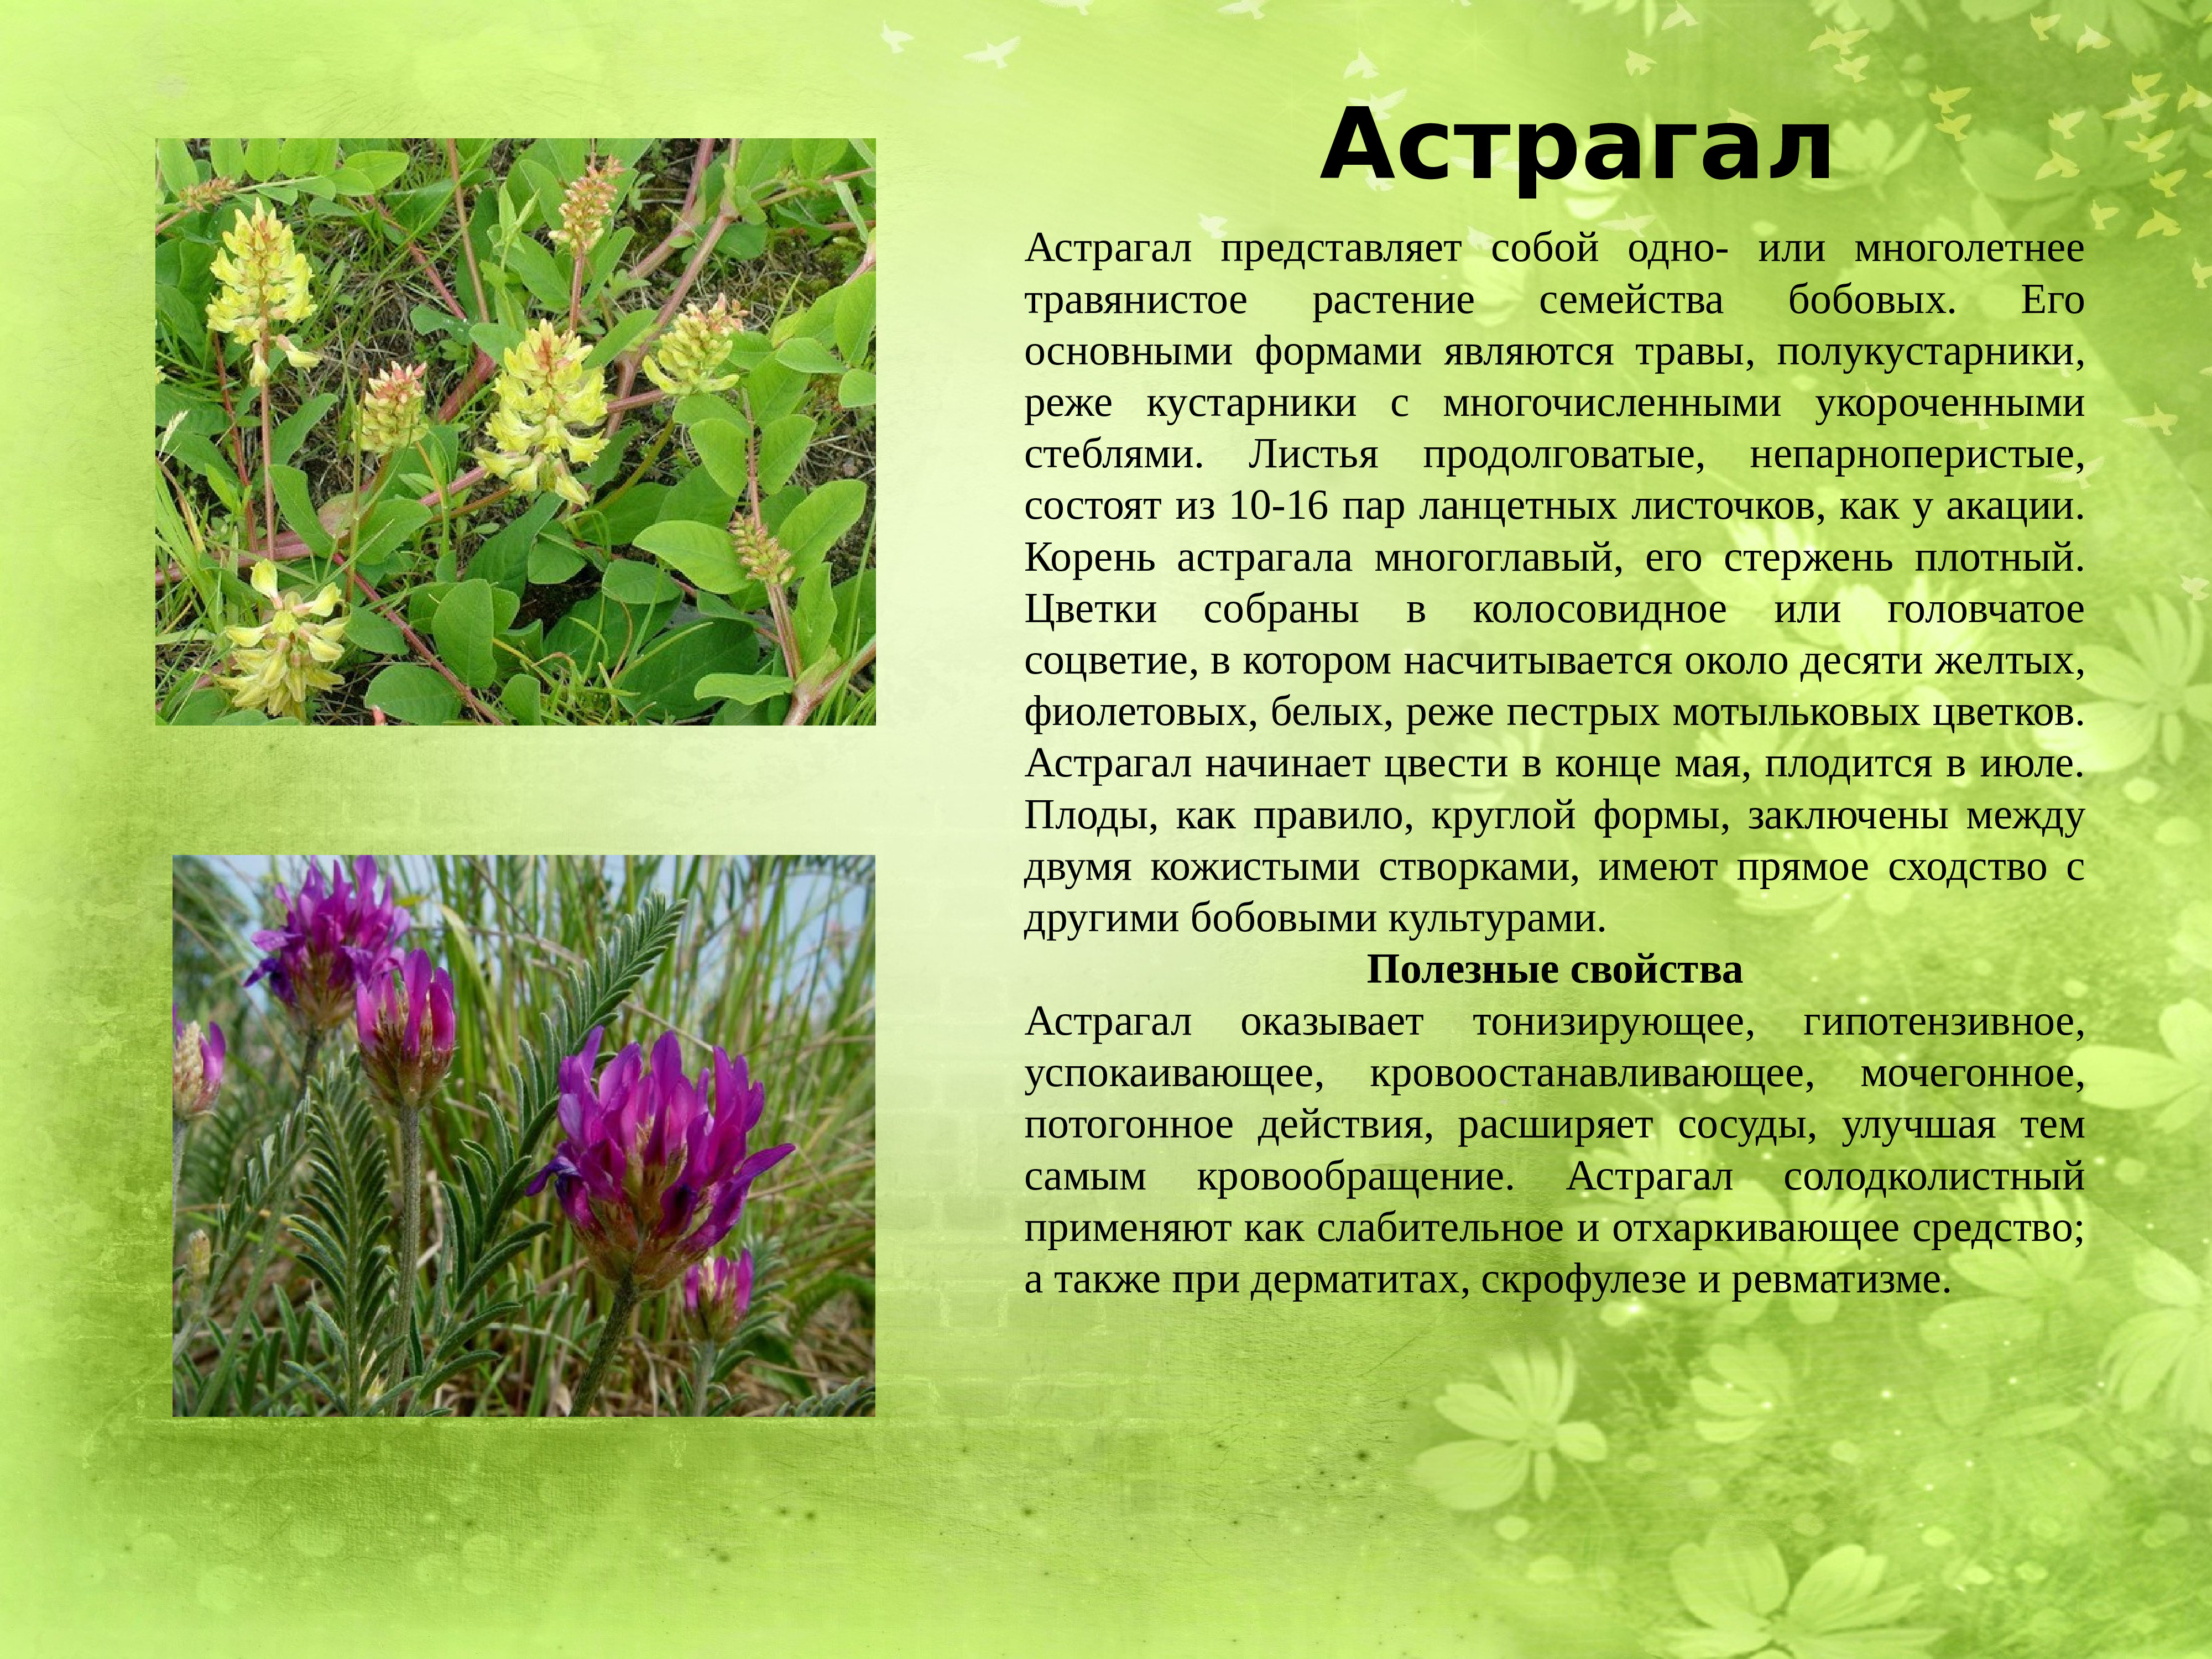 Лекарственные растения Донбасса